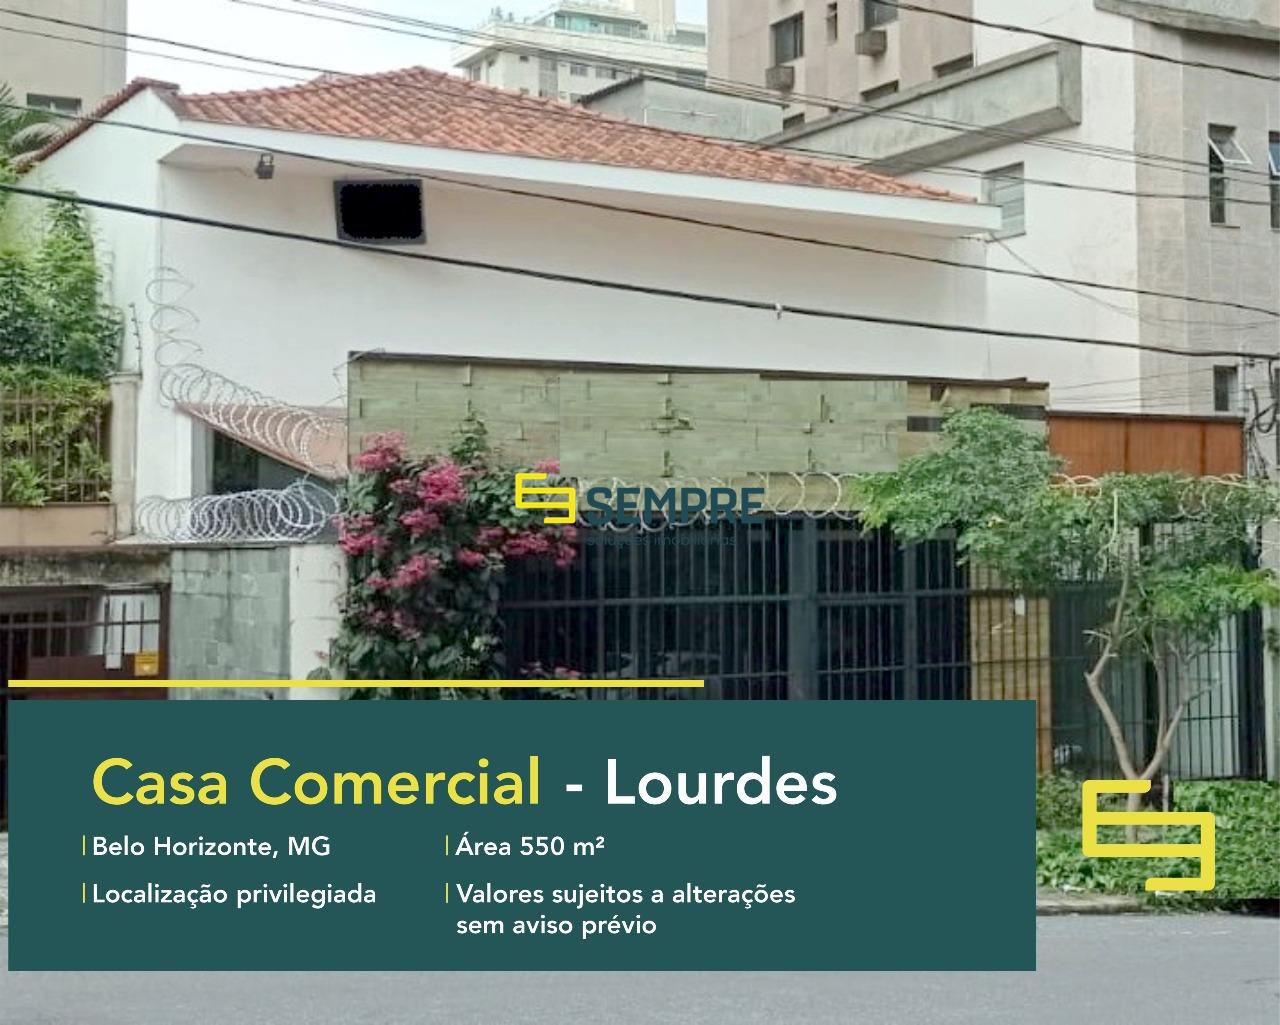 Casa comercial no Lourdes à venda em Belo Horizonte, excelente localização. O estabelecimento comercial conta com área de 550 m².